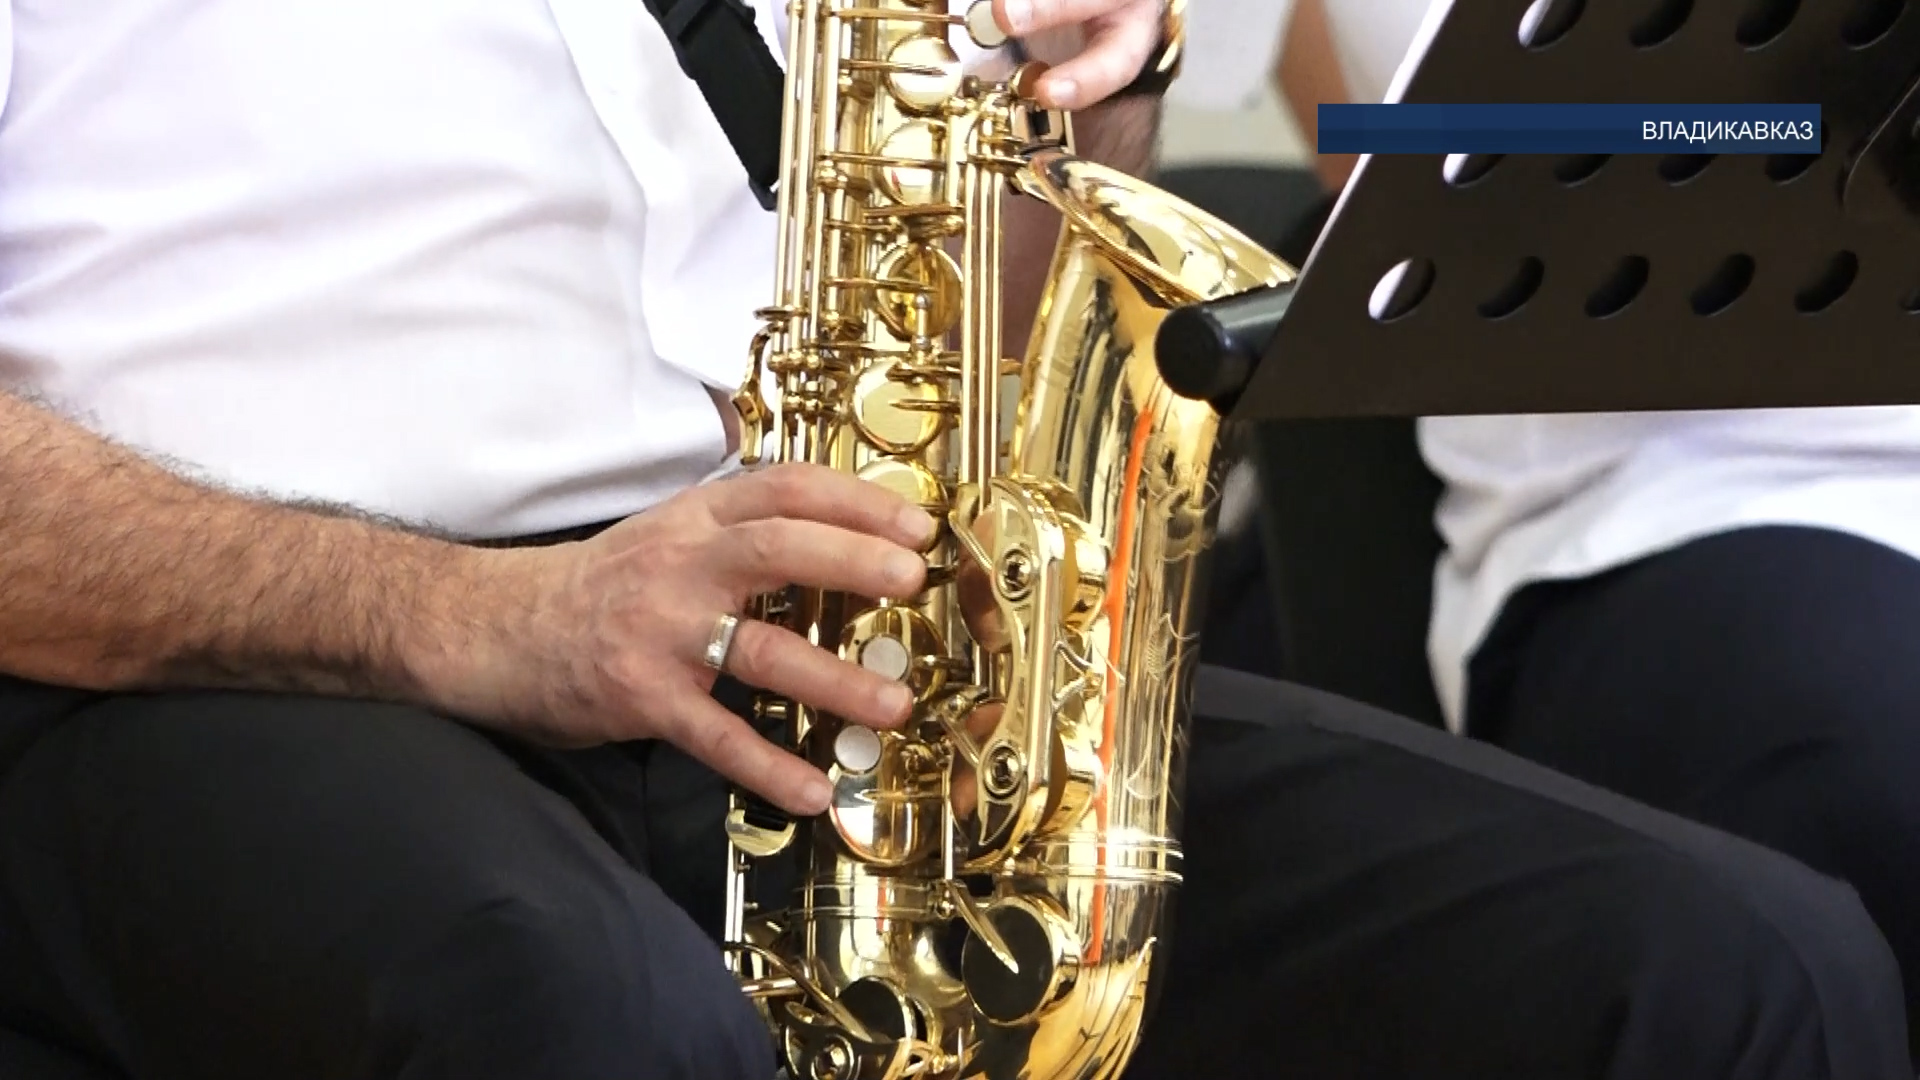 30 апреля в мире отметили международный День джаза